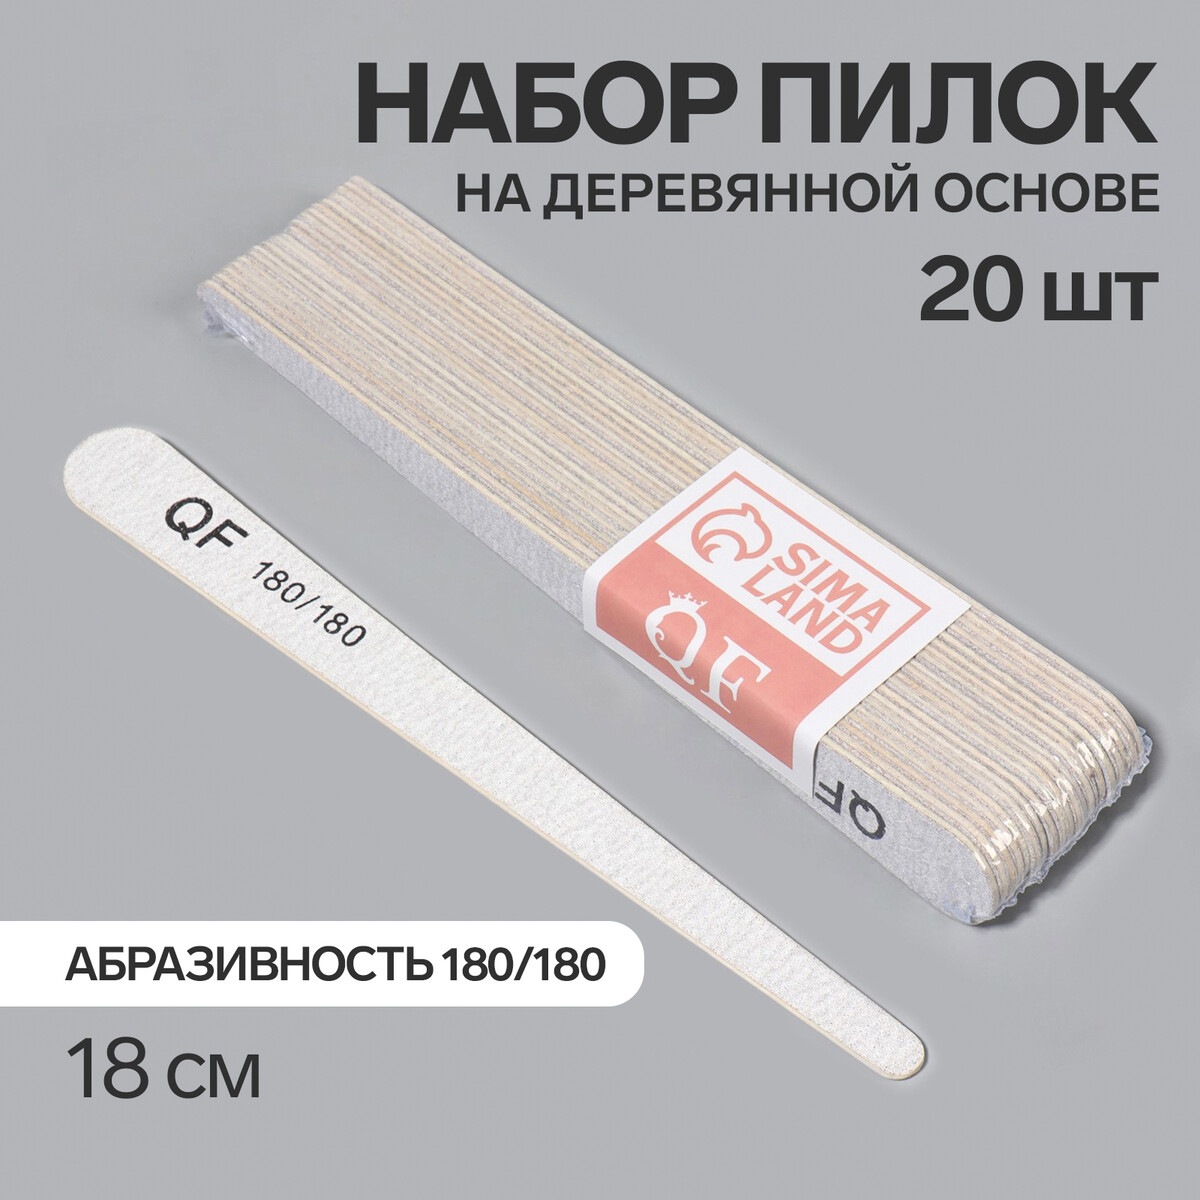 Пилка-наждак, набор 20 шт, деревянная основа, абразивность 180/180, 18 см, цвет серый основа и сменные файлы для пилки 18 см 10 шт абразивность 80